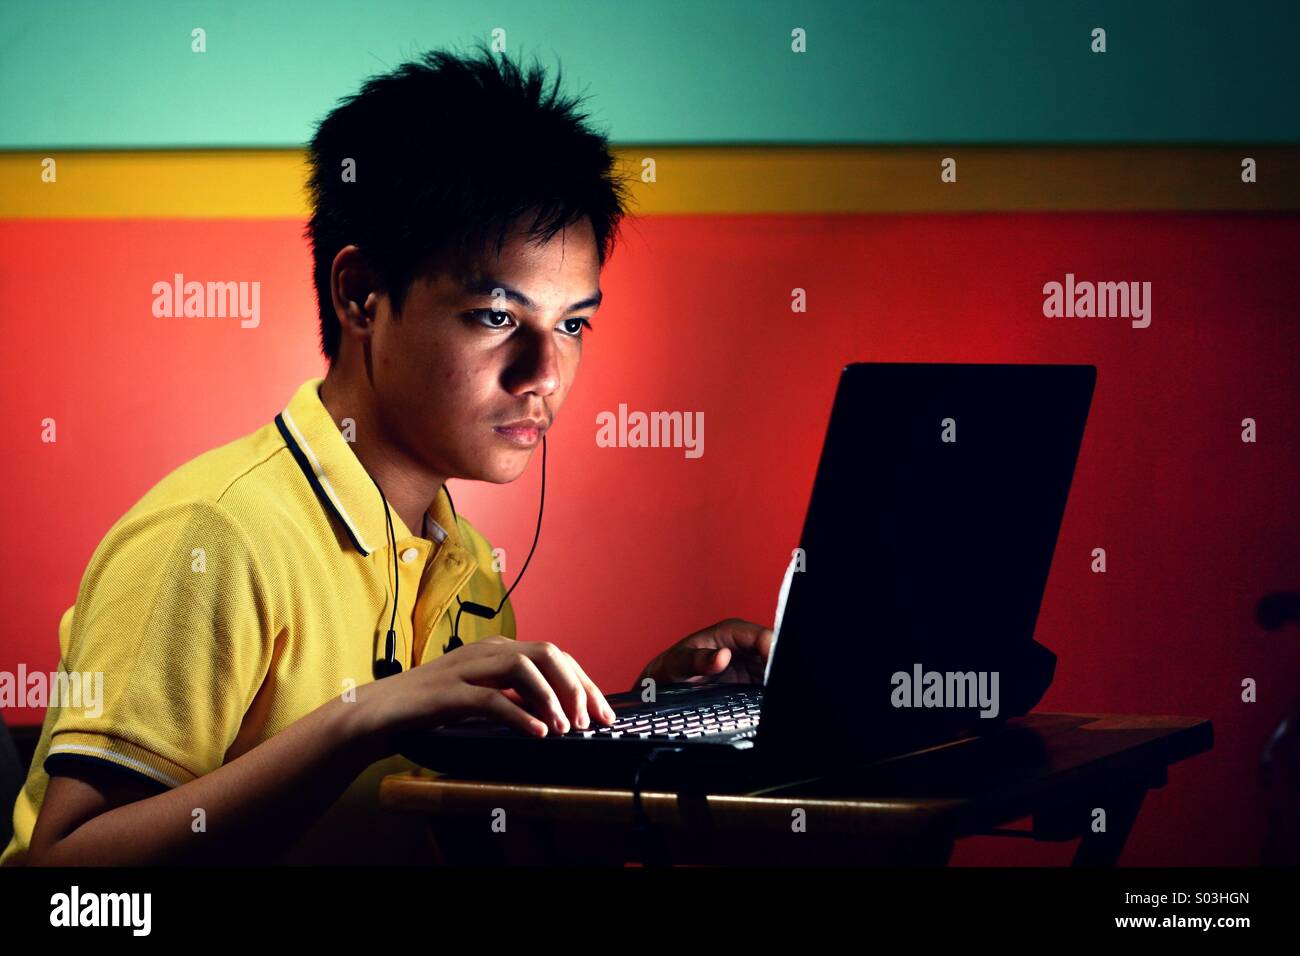 Adolescents asiatiques travaillant ou étudiant d'un ordinateur portable Banque D'Images